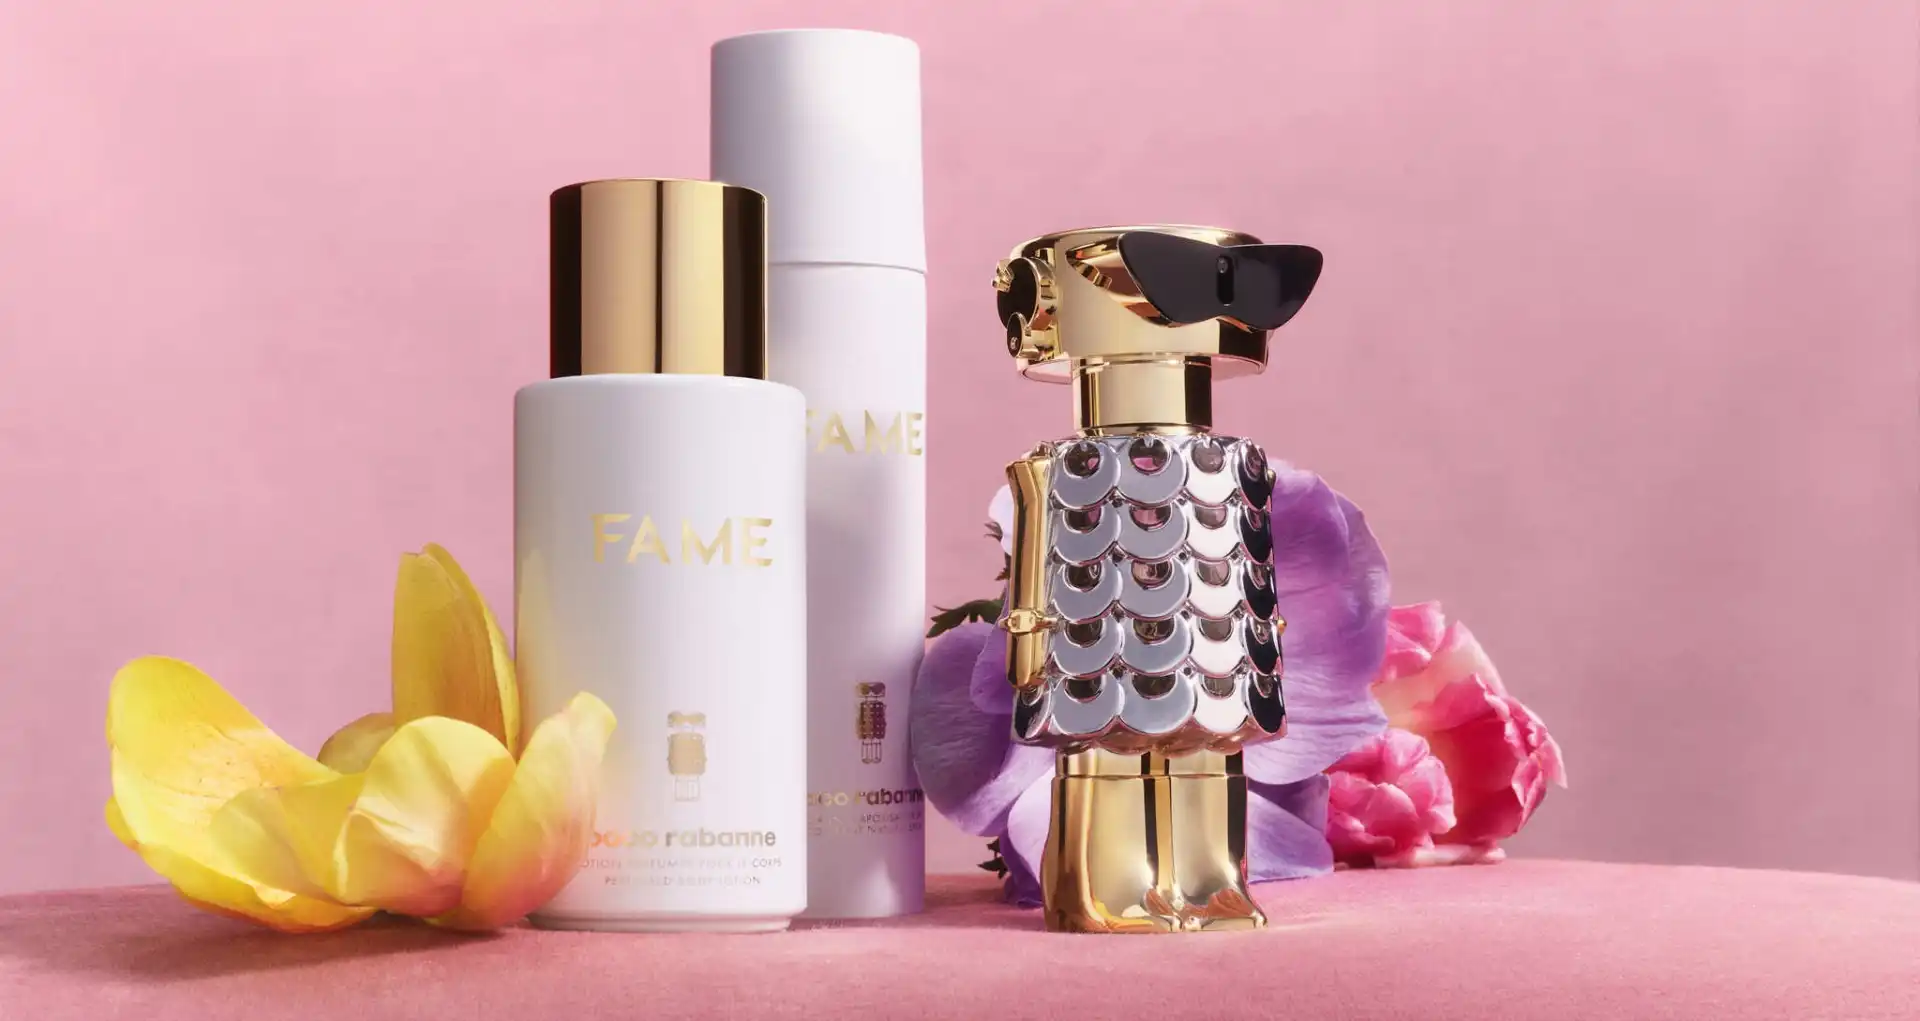 Así es Fame el nuevo perfume para mujeres de Paco Rabanne